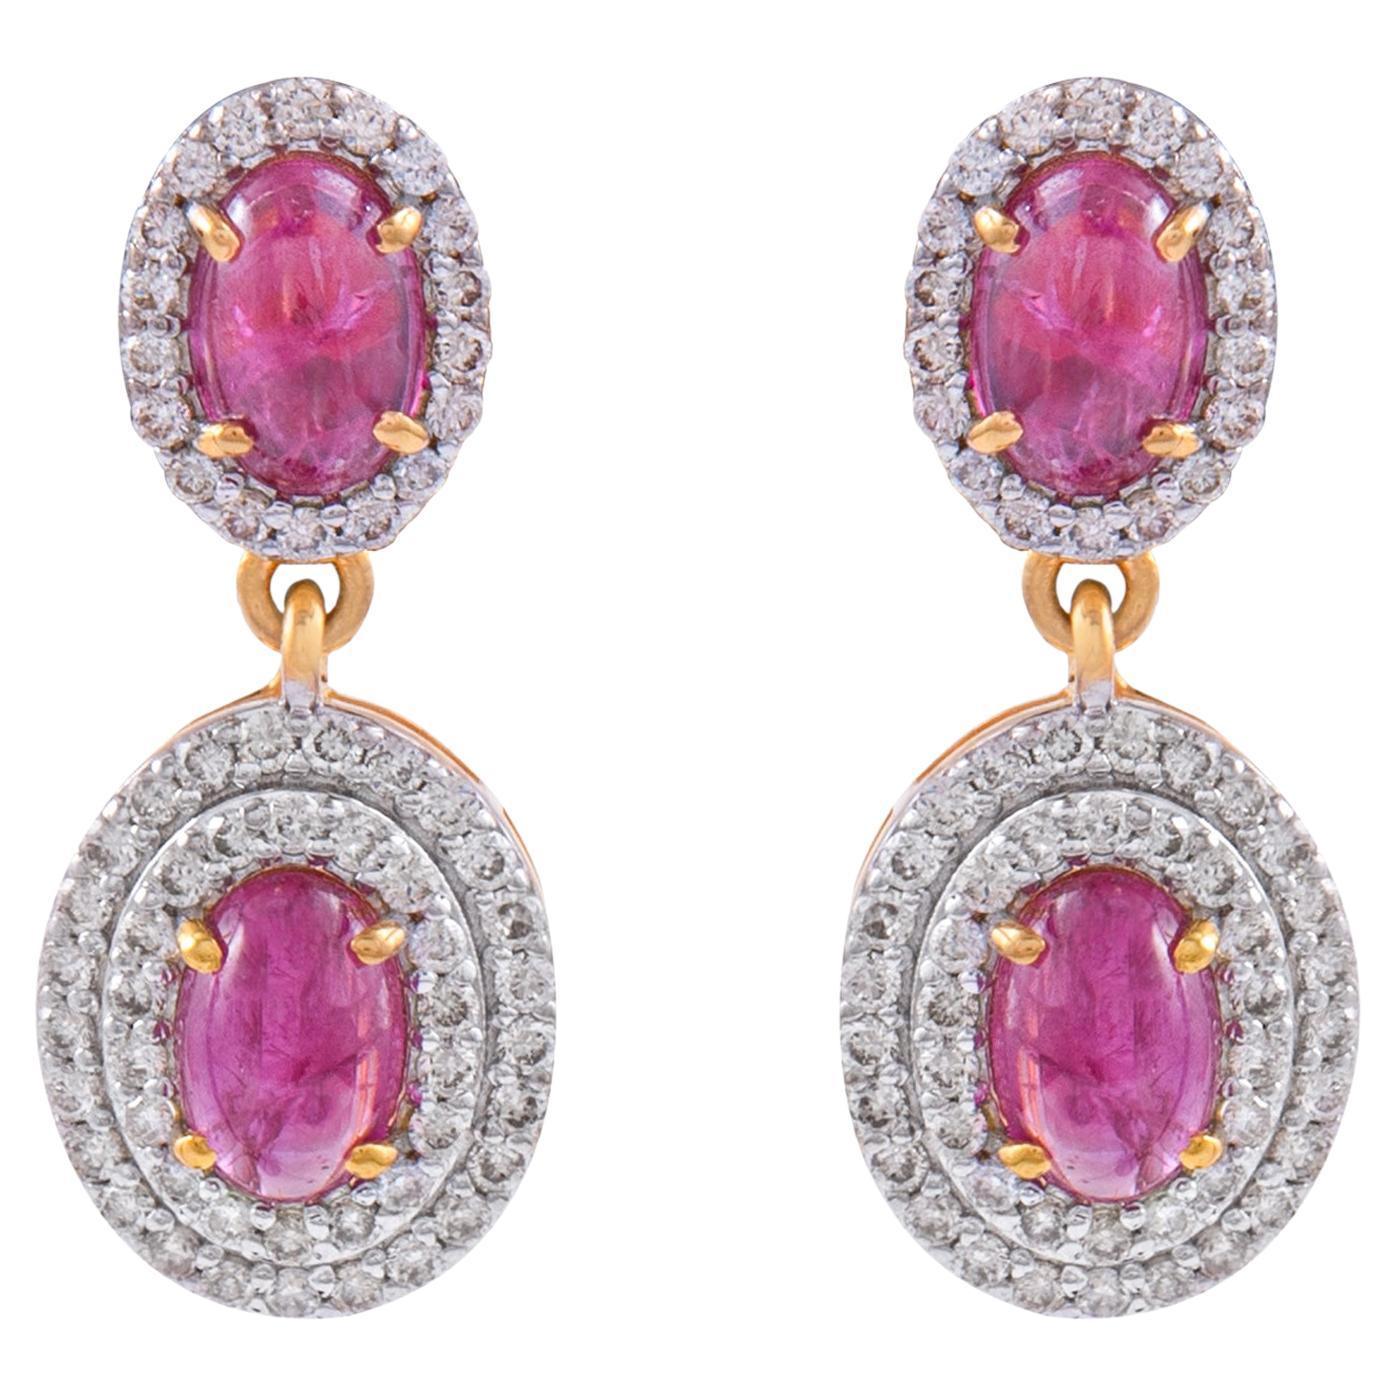 Ruby Dangle Earrings with Diamond in 14k Gold